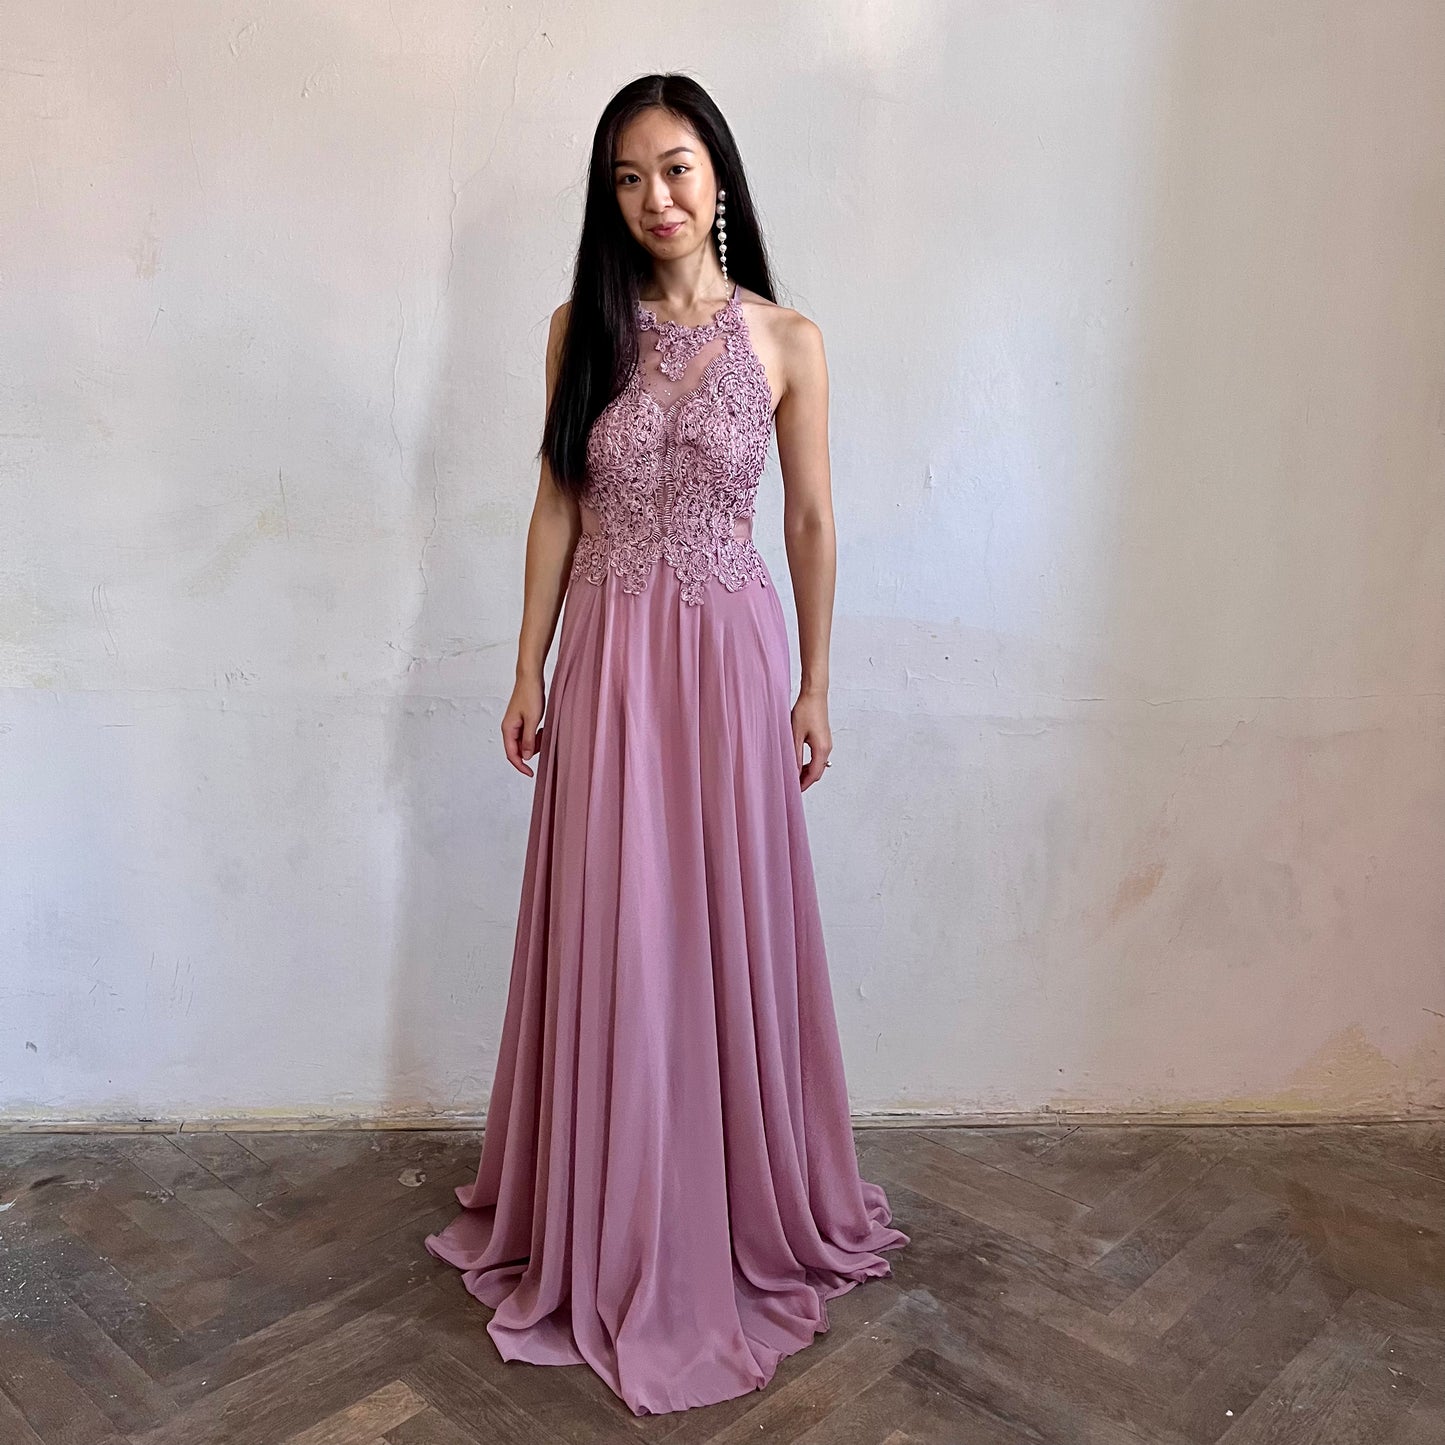 Modelka asijského původu pózující zepředu oblečená ve starorůžových krajovaných společenských šatech